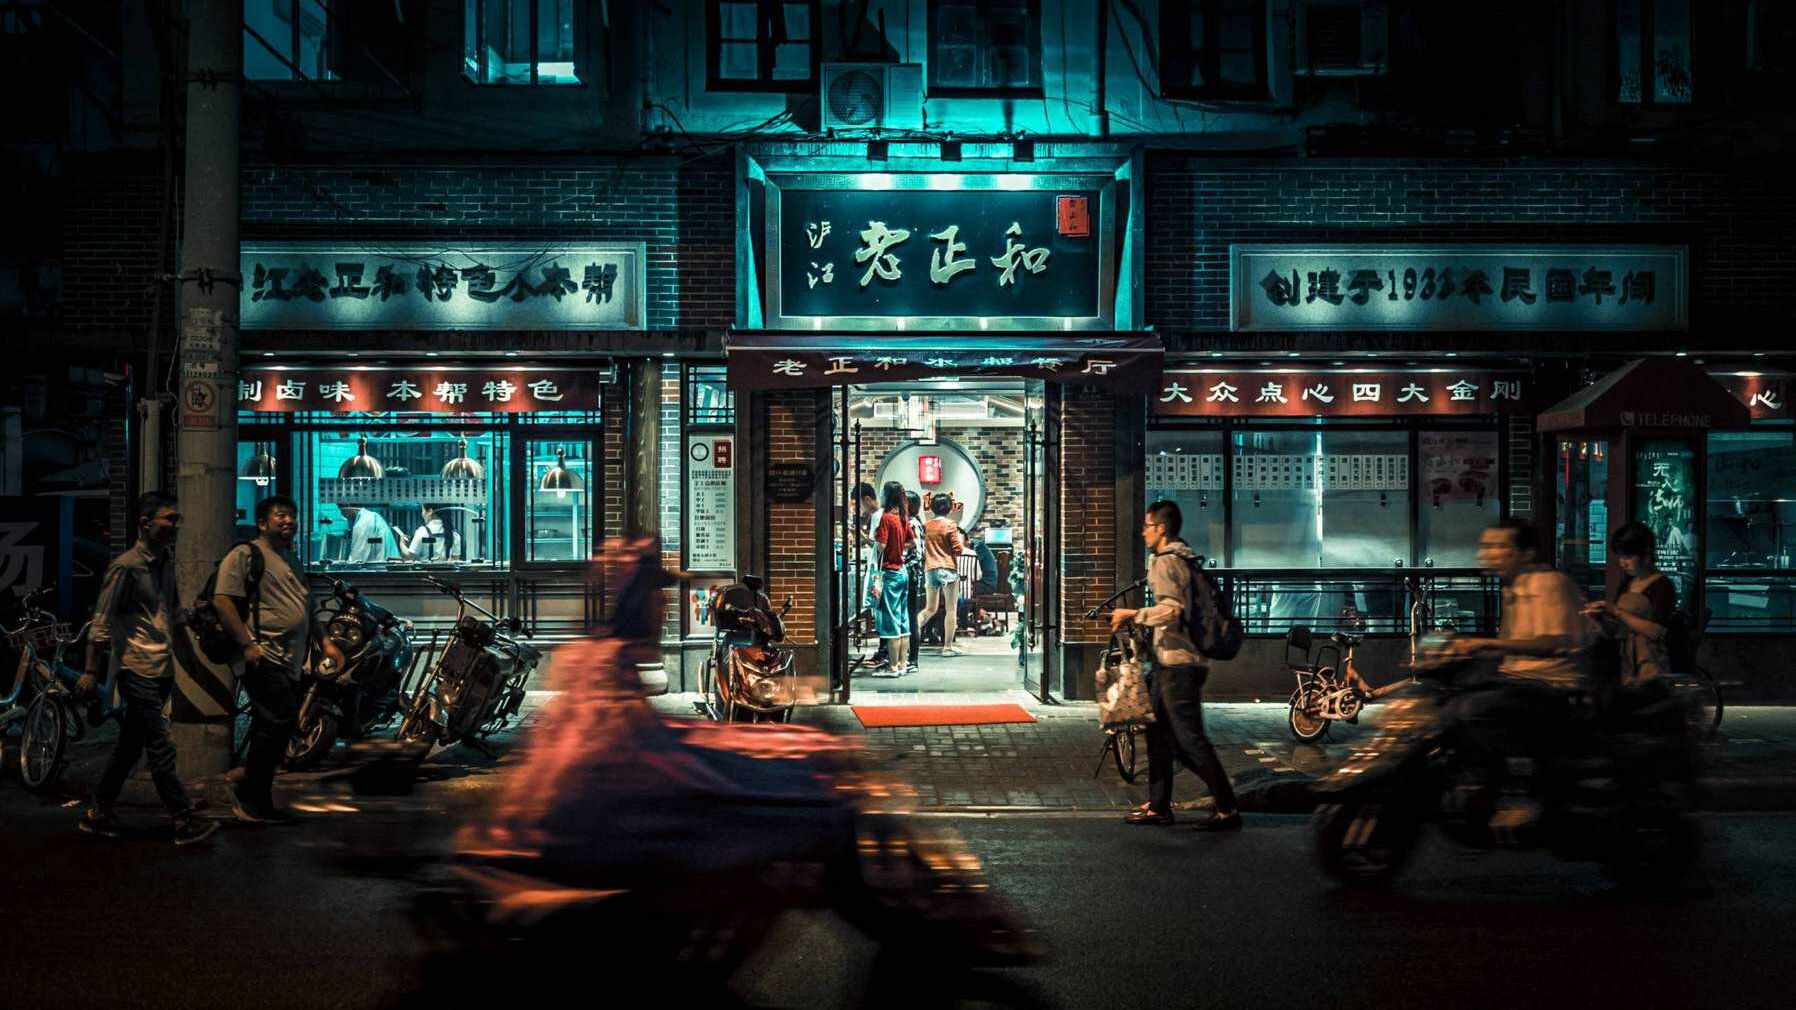 Edificio chino de noche